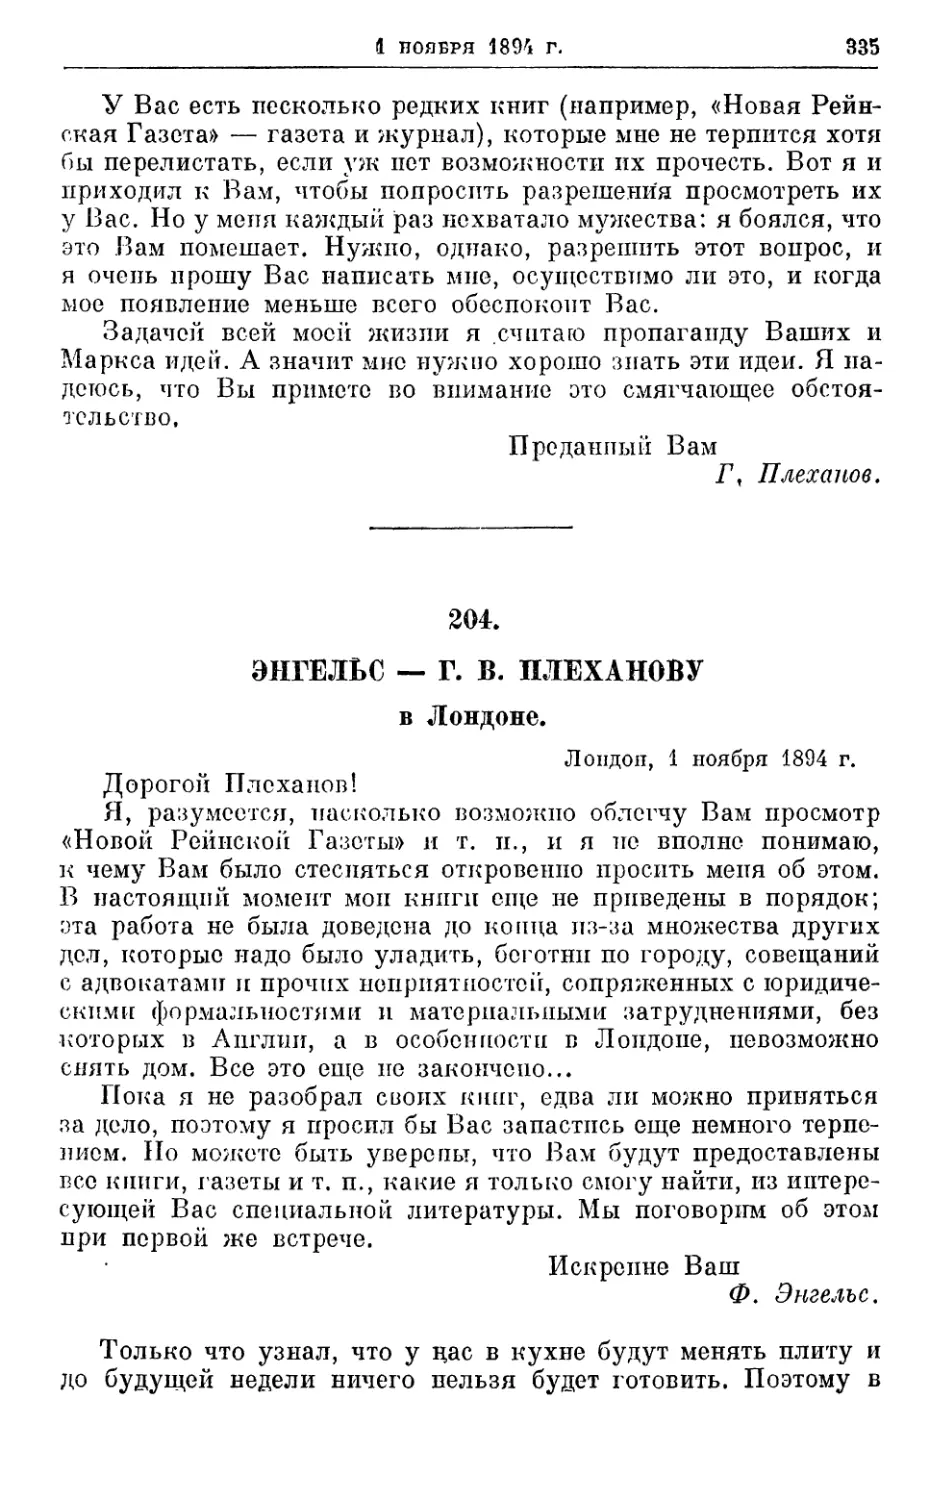 204. Энгельс — Г. В. Плеханову, 1 ноября 1894г